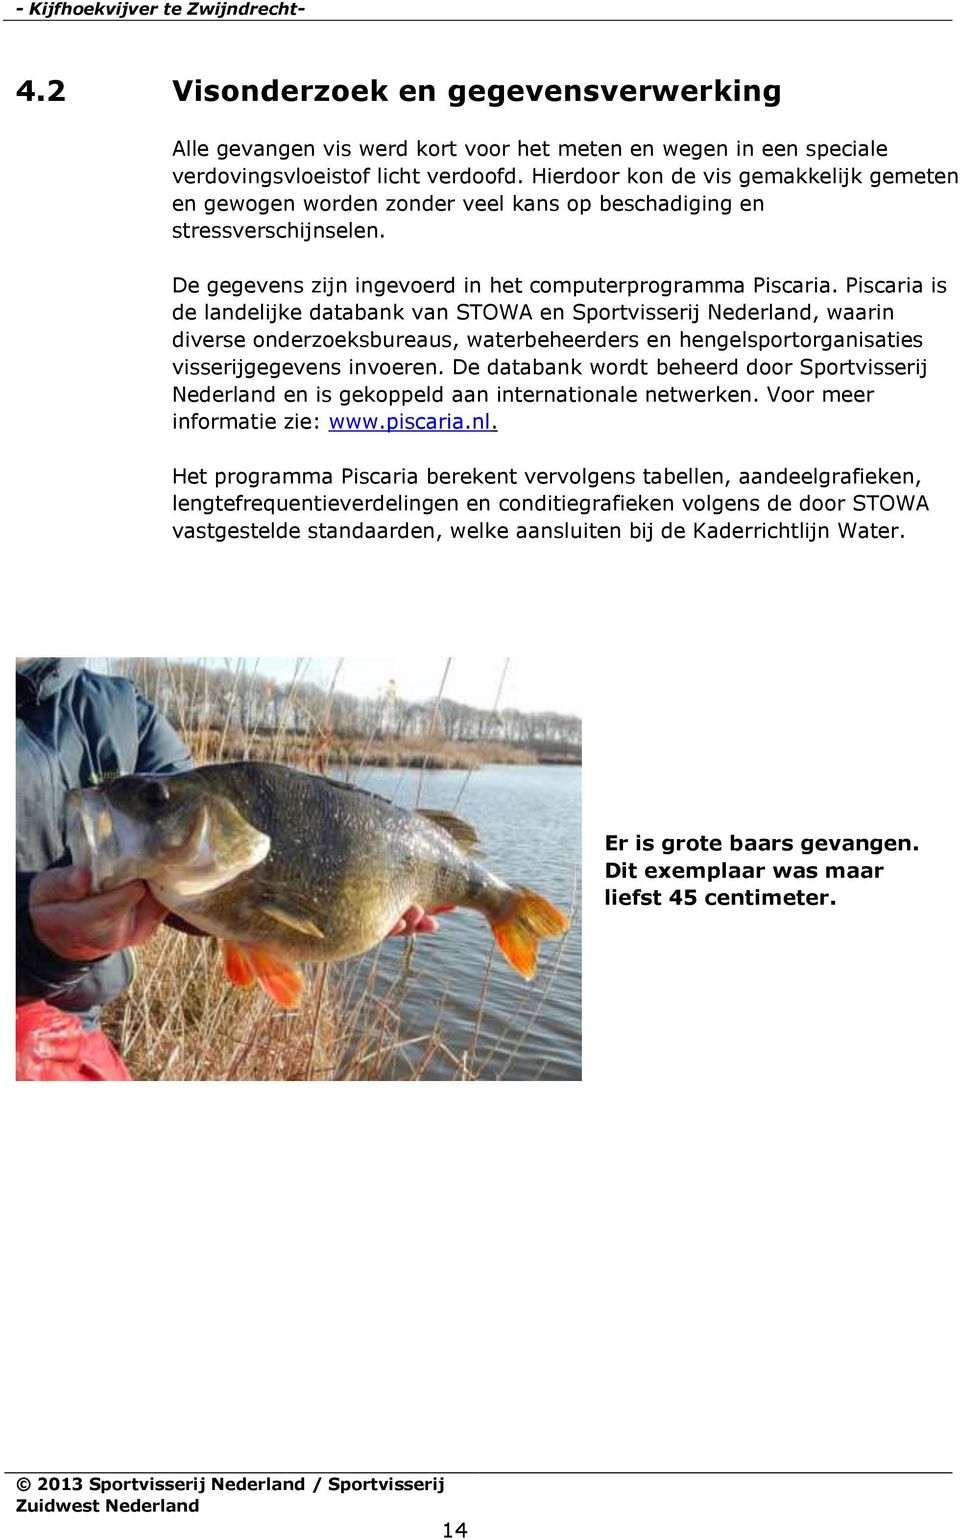 Piscaria is de landelijke databank van STOWA en Sportvisserij Nederland, waarin diverse onderzoeksbureaus, waterbeheerders en hengelsportorganisaties visserijgegevens invoeren.